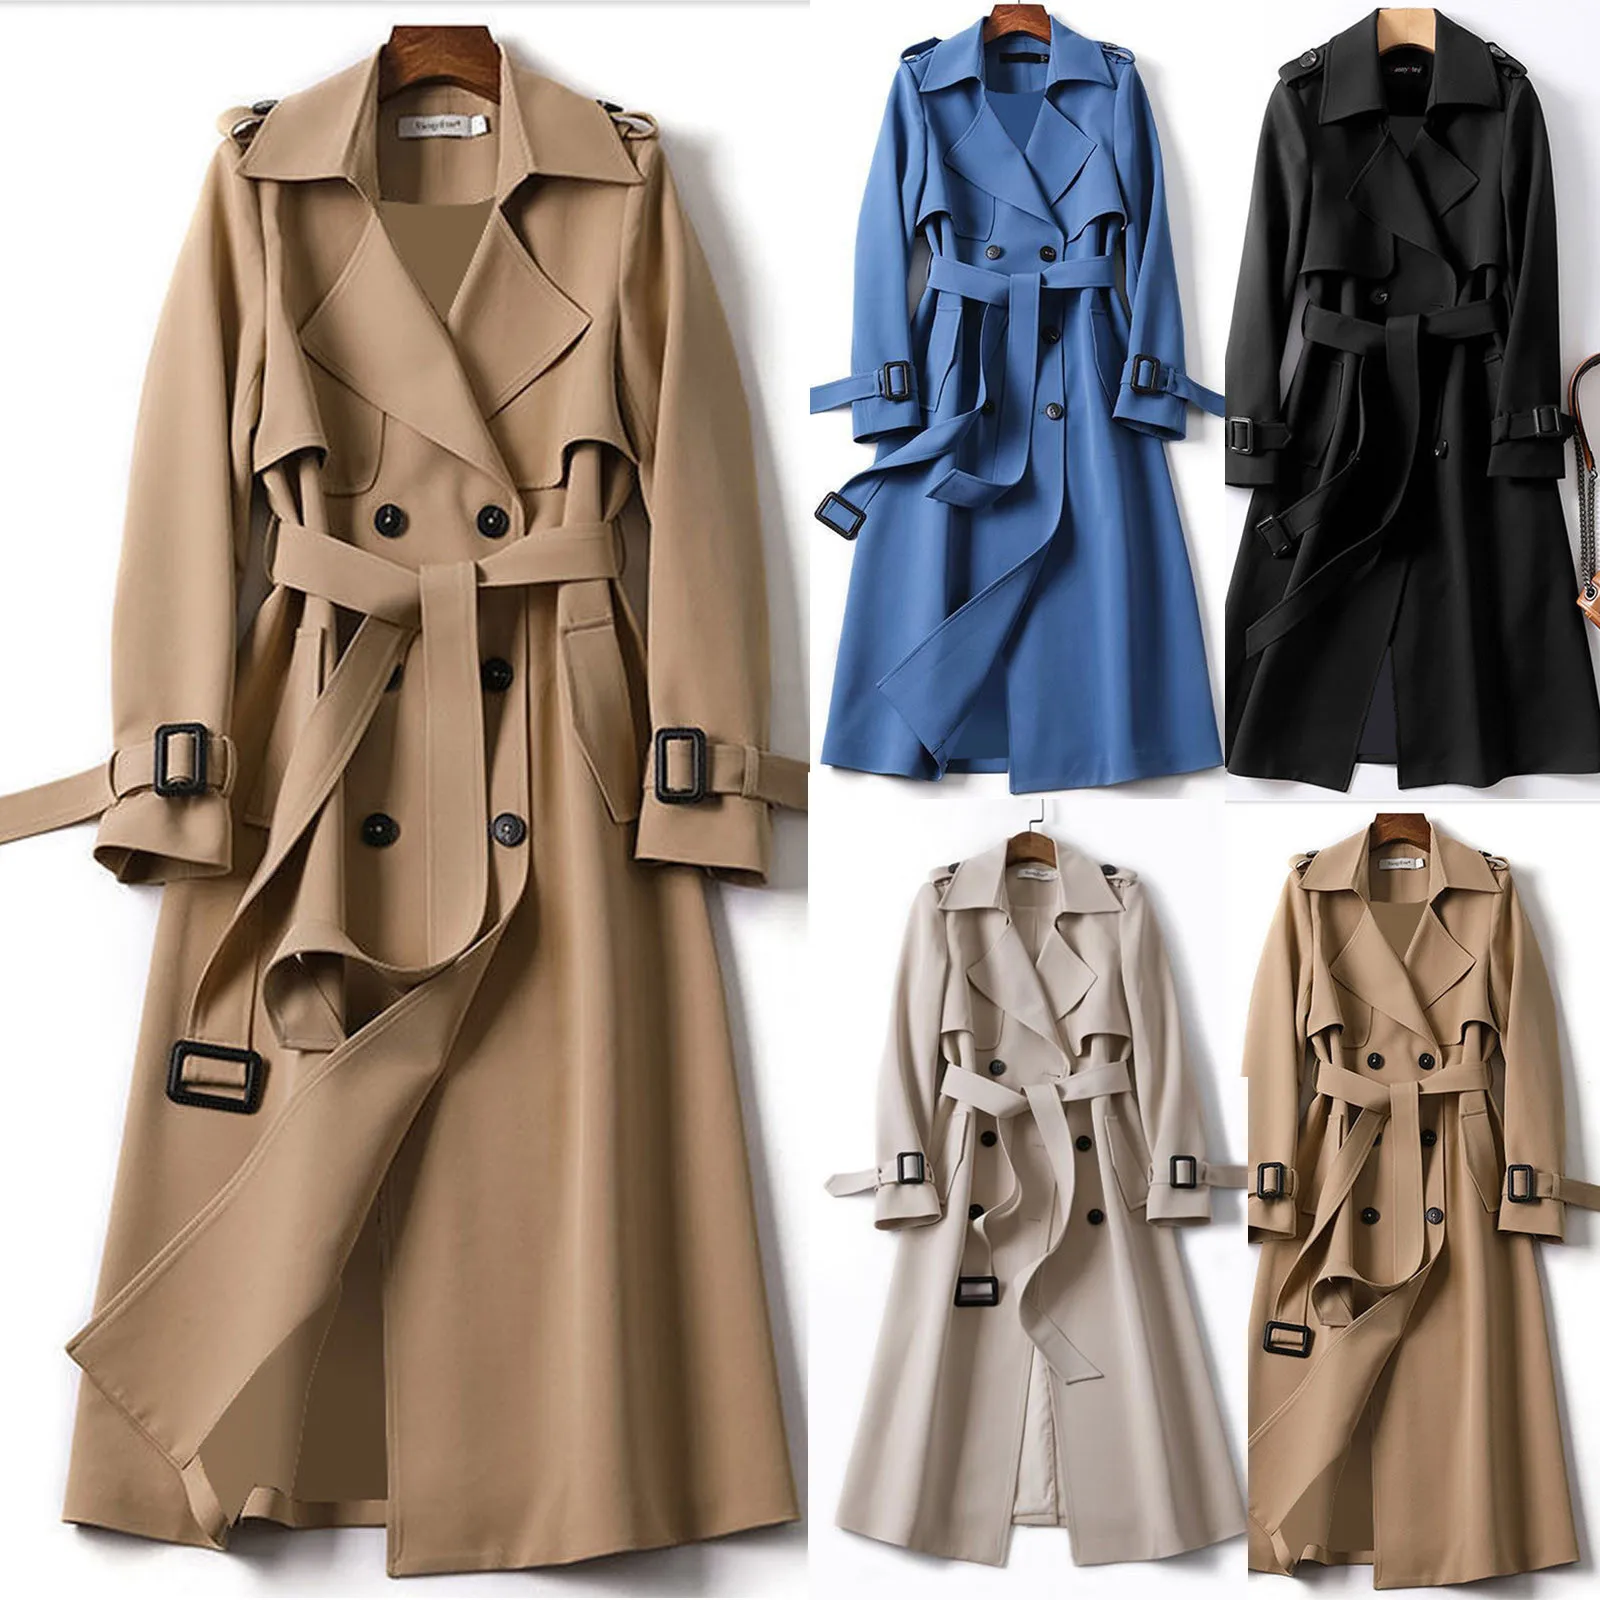 

SLPBELY Women Trench Coat Windbreaker Casual Lapel Lace Up Double-Breasted Belt Coat Jacket Winter Long Overcoat Outerwear M-4XL